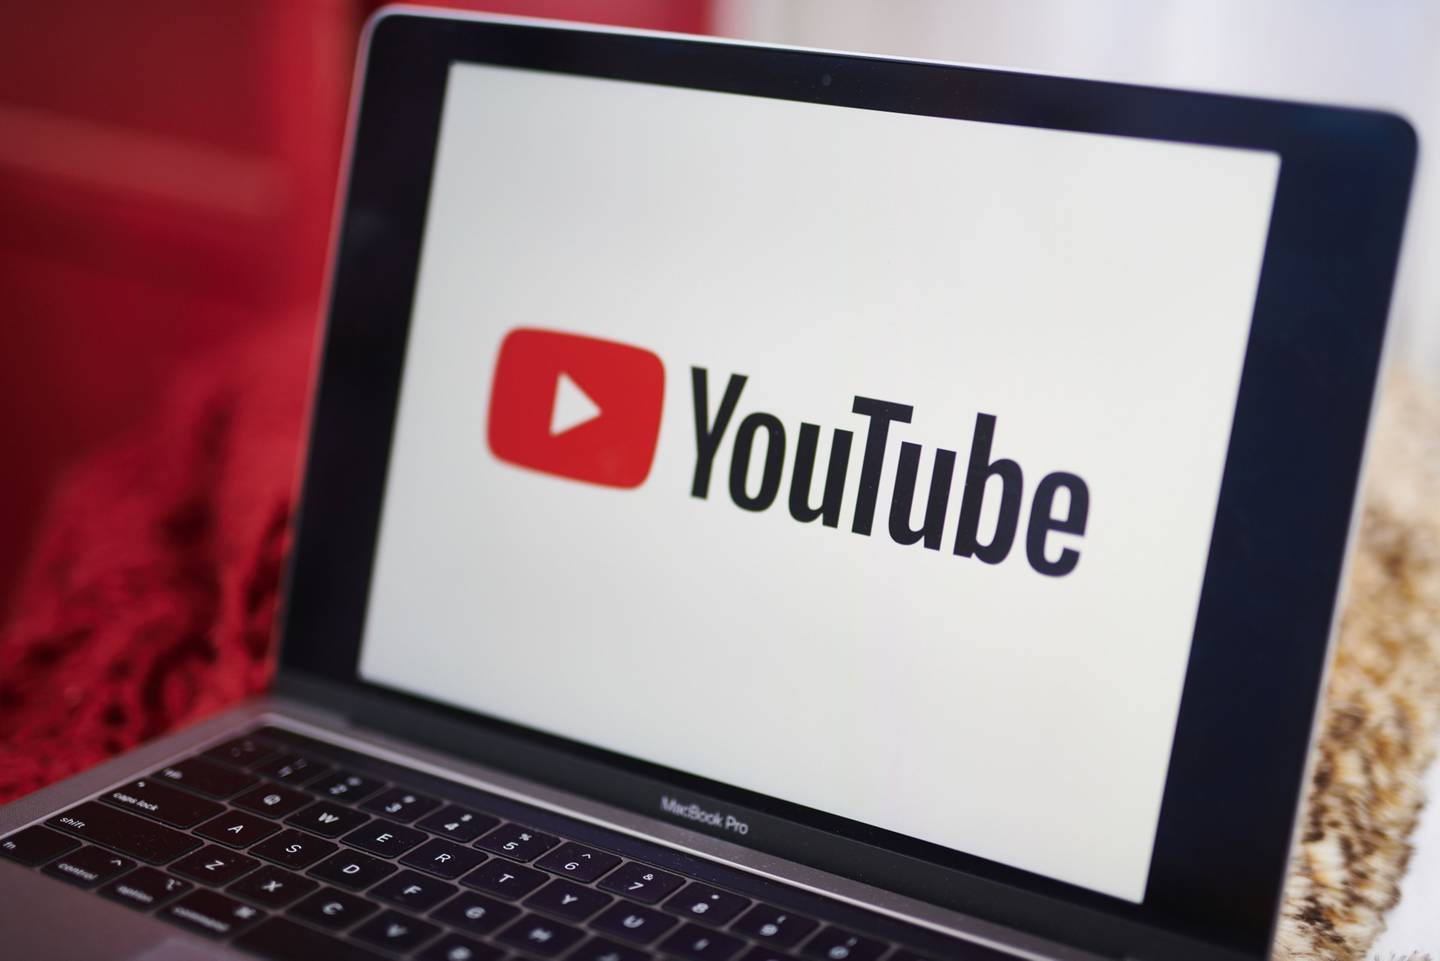 El logotipo de YouTube Inc. aparece en una computadora portátil